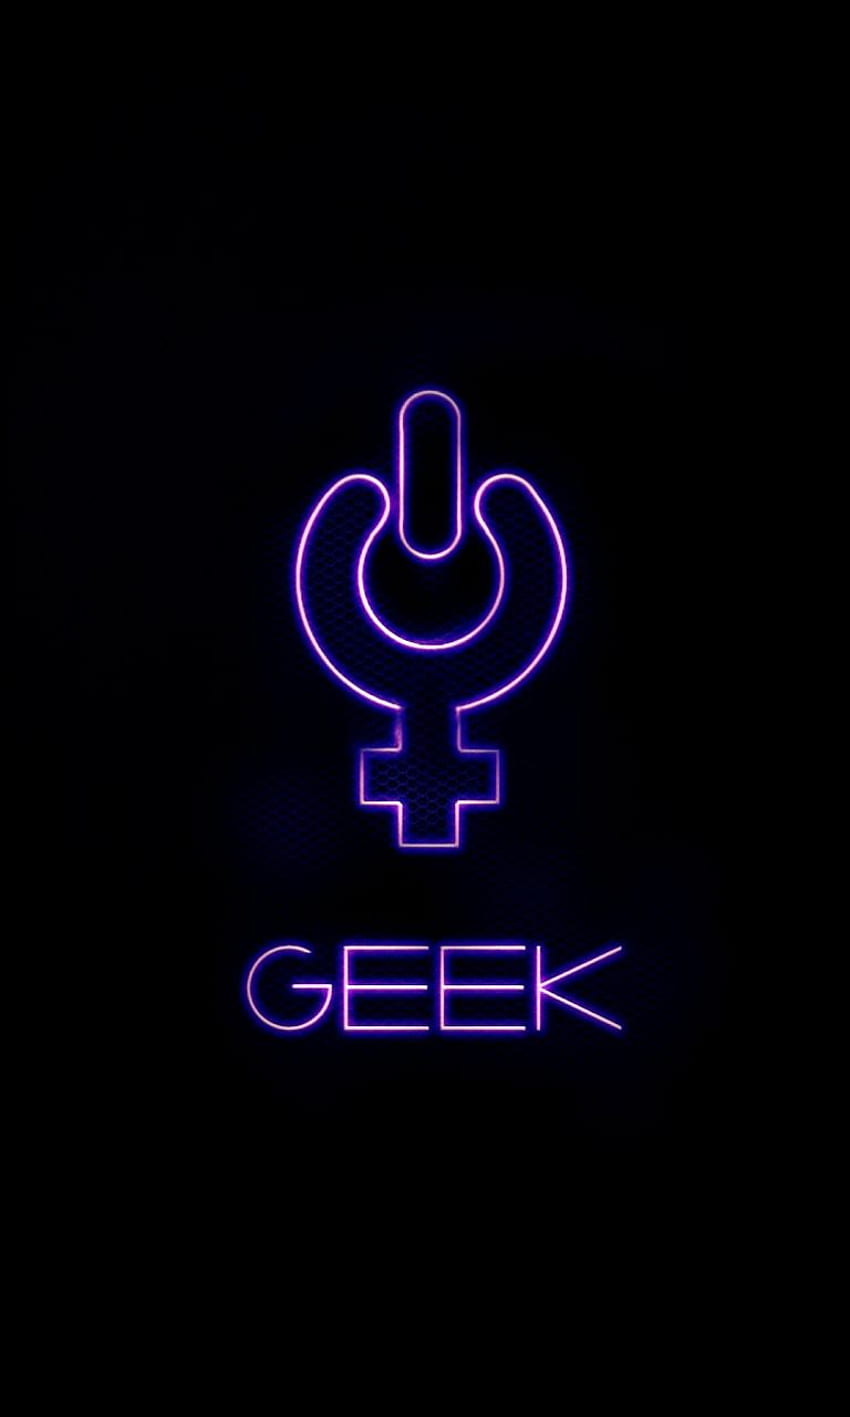 Girl geek HD wallpapers | Pxfuel